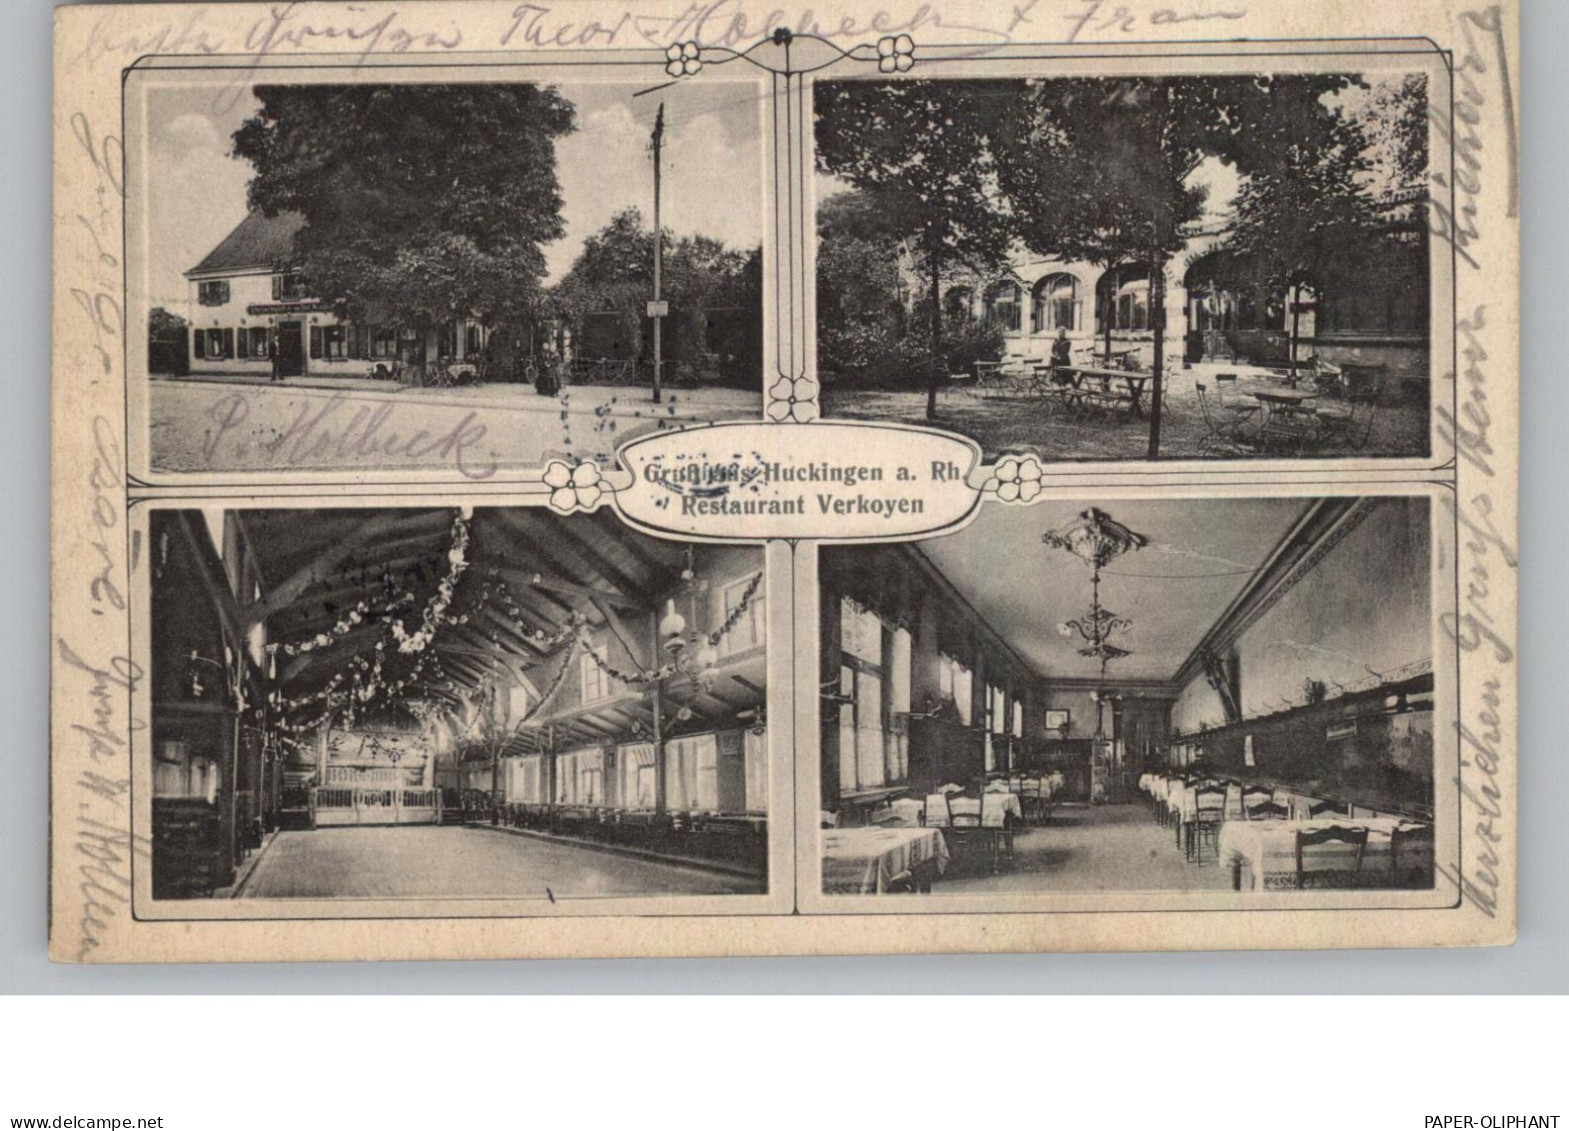 4100 DUISBURG - HUCKINGEN, Restaurant Verkoyen, 1911 - Duisburg